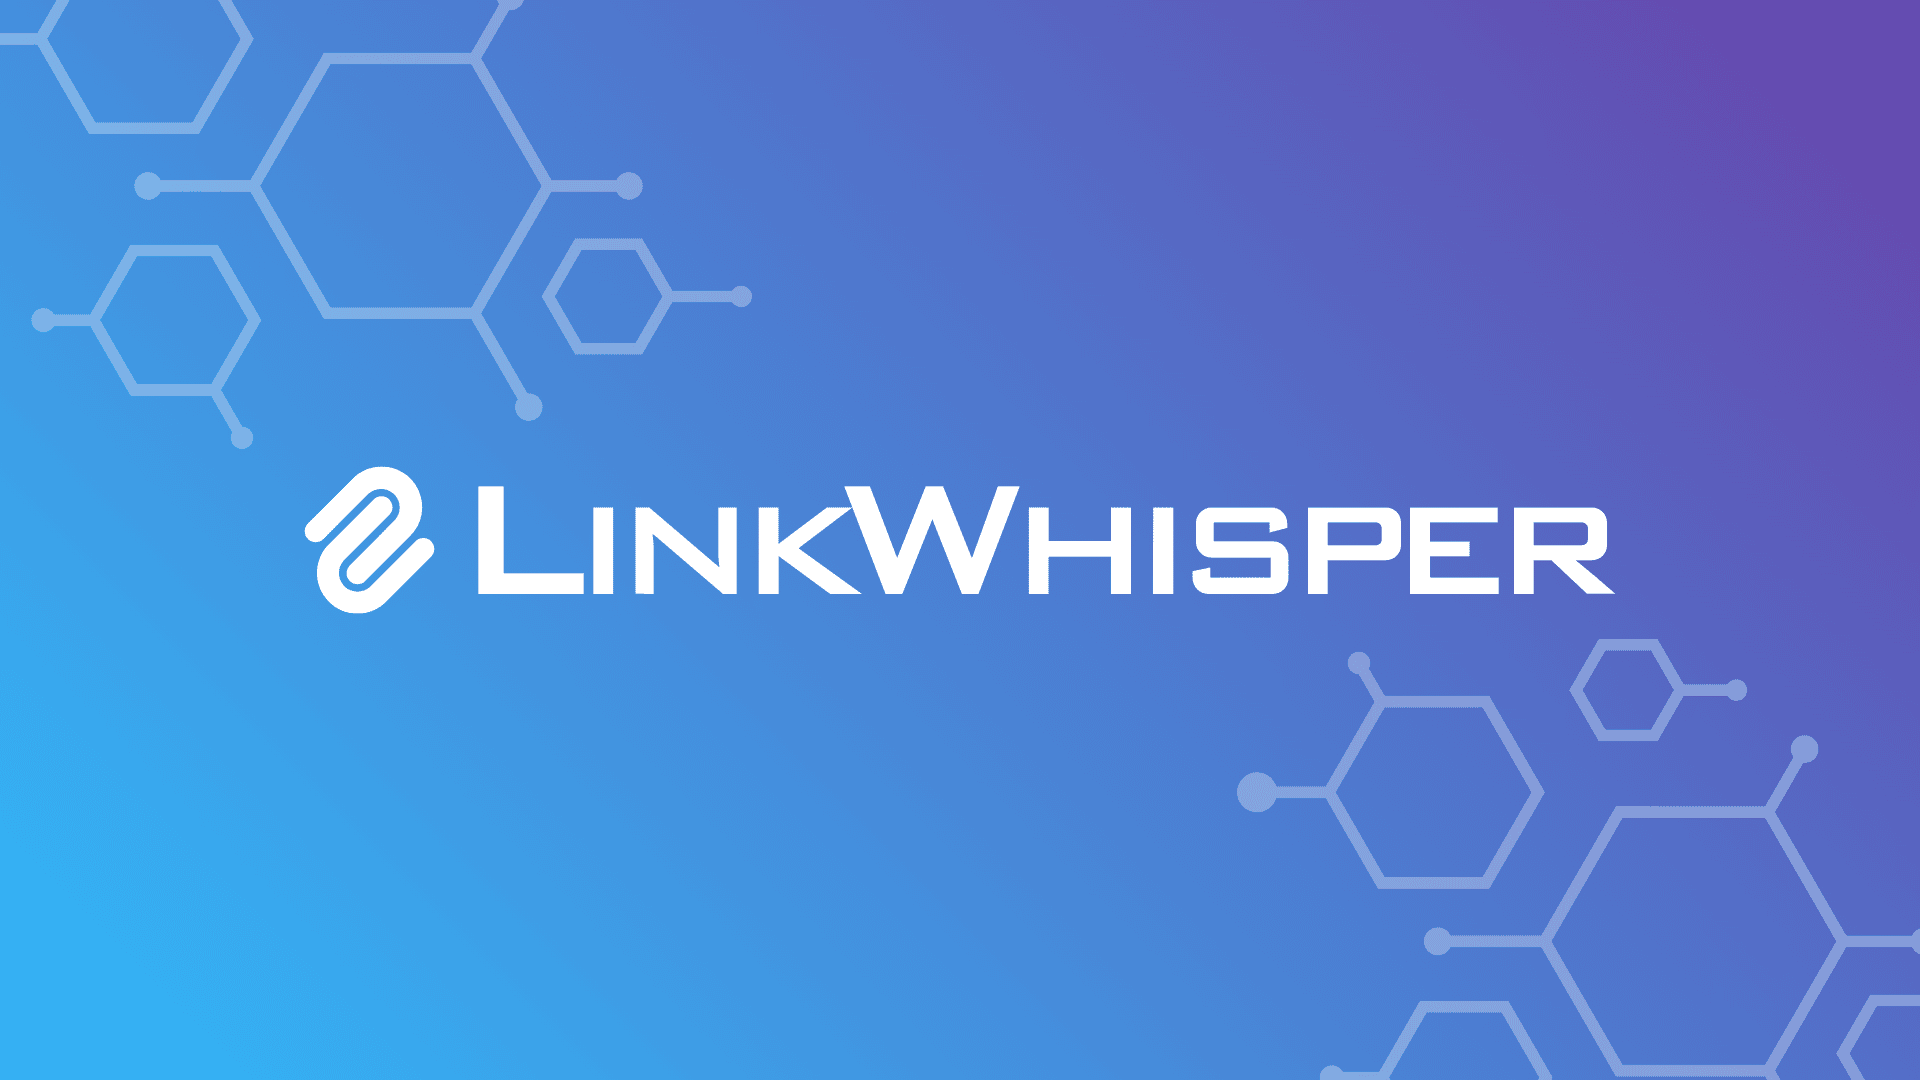 Link Whisper Logo